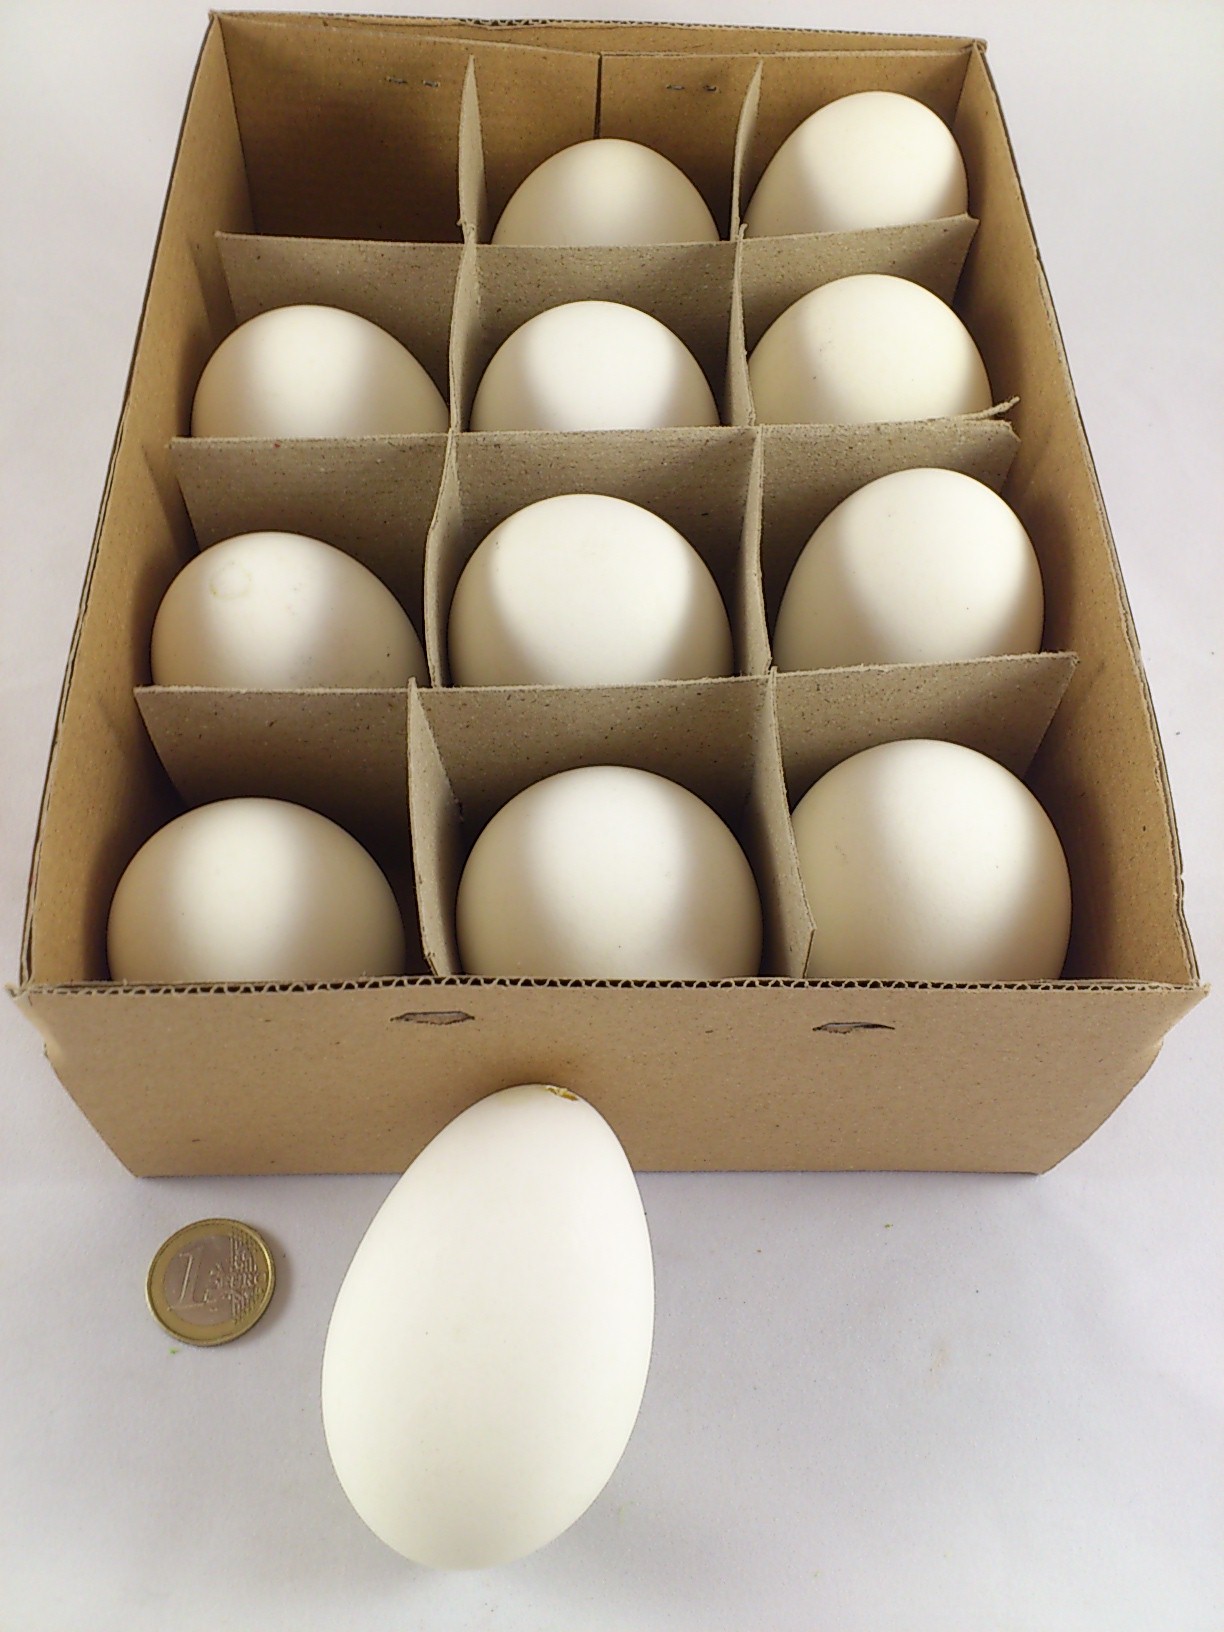 Goose eggs 12 p.